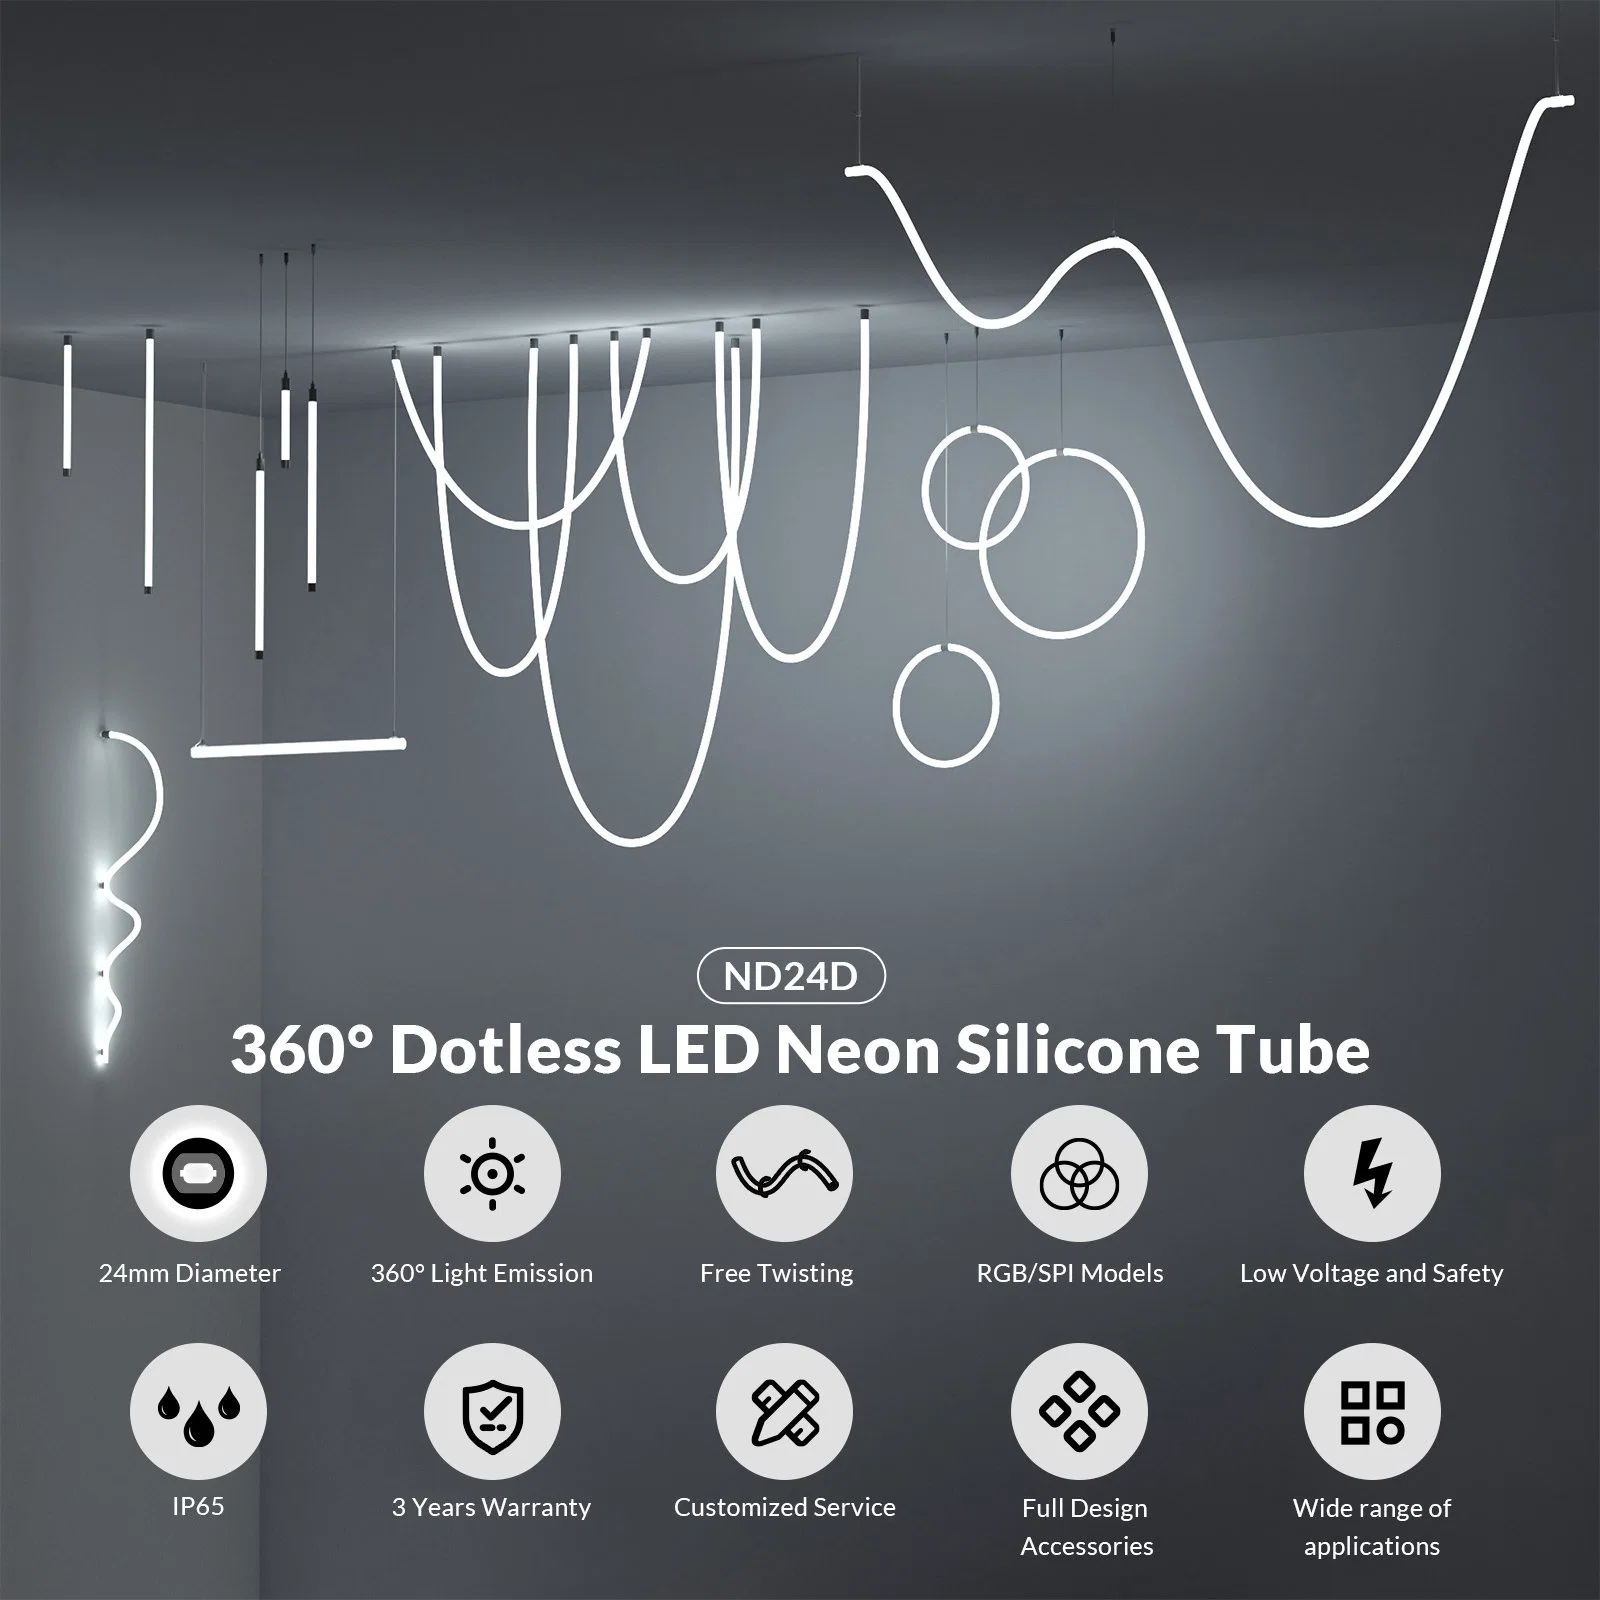 ND24D новый продукт 360 градусов гибкой трубки неоновых ламп освещения с полным набором принадлежностей для использования внутри помещений дизайн ландшафта освещение